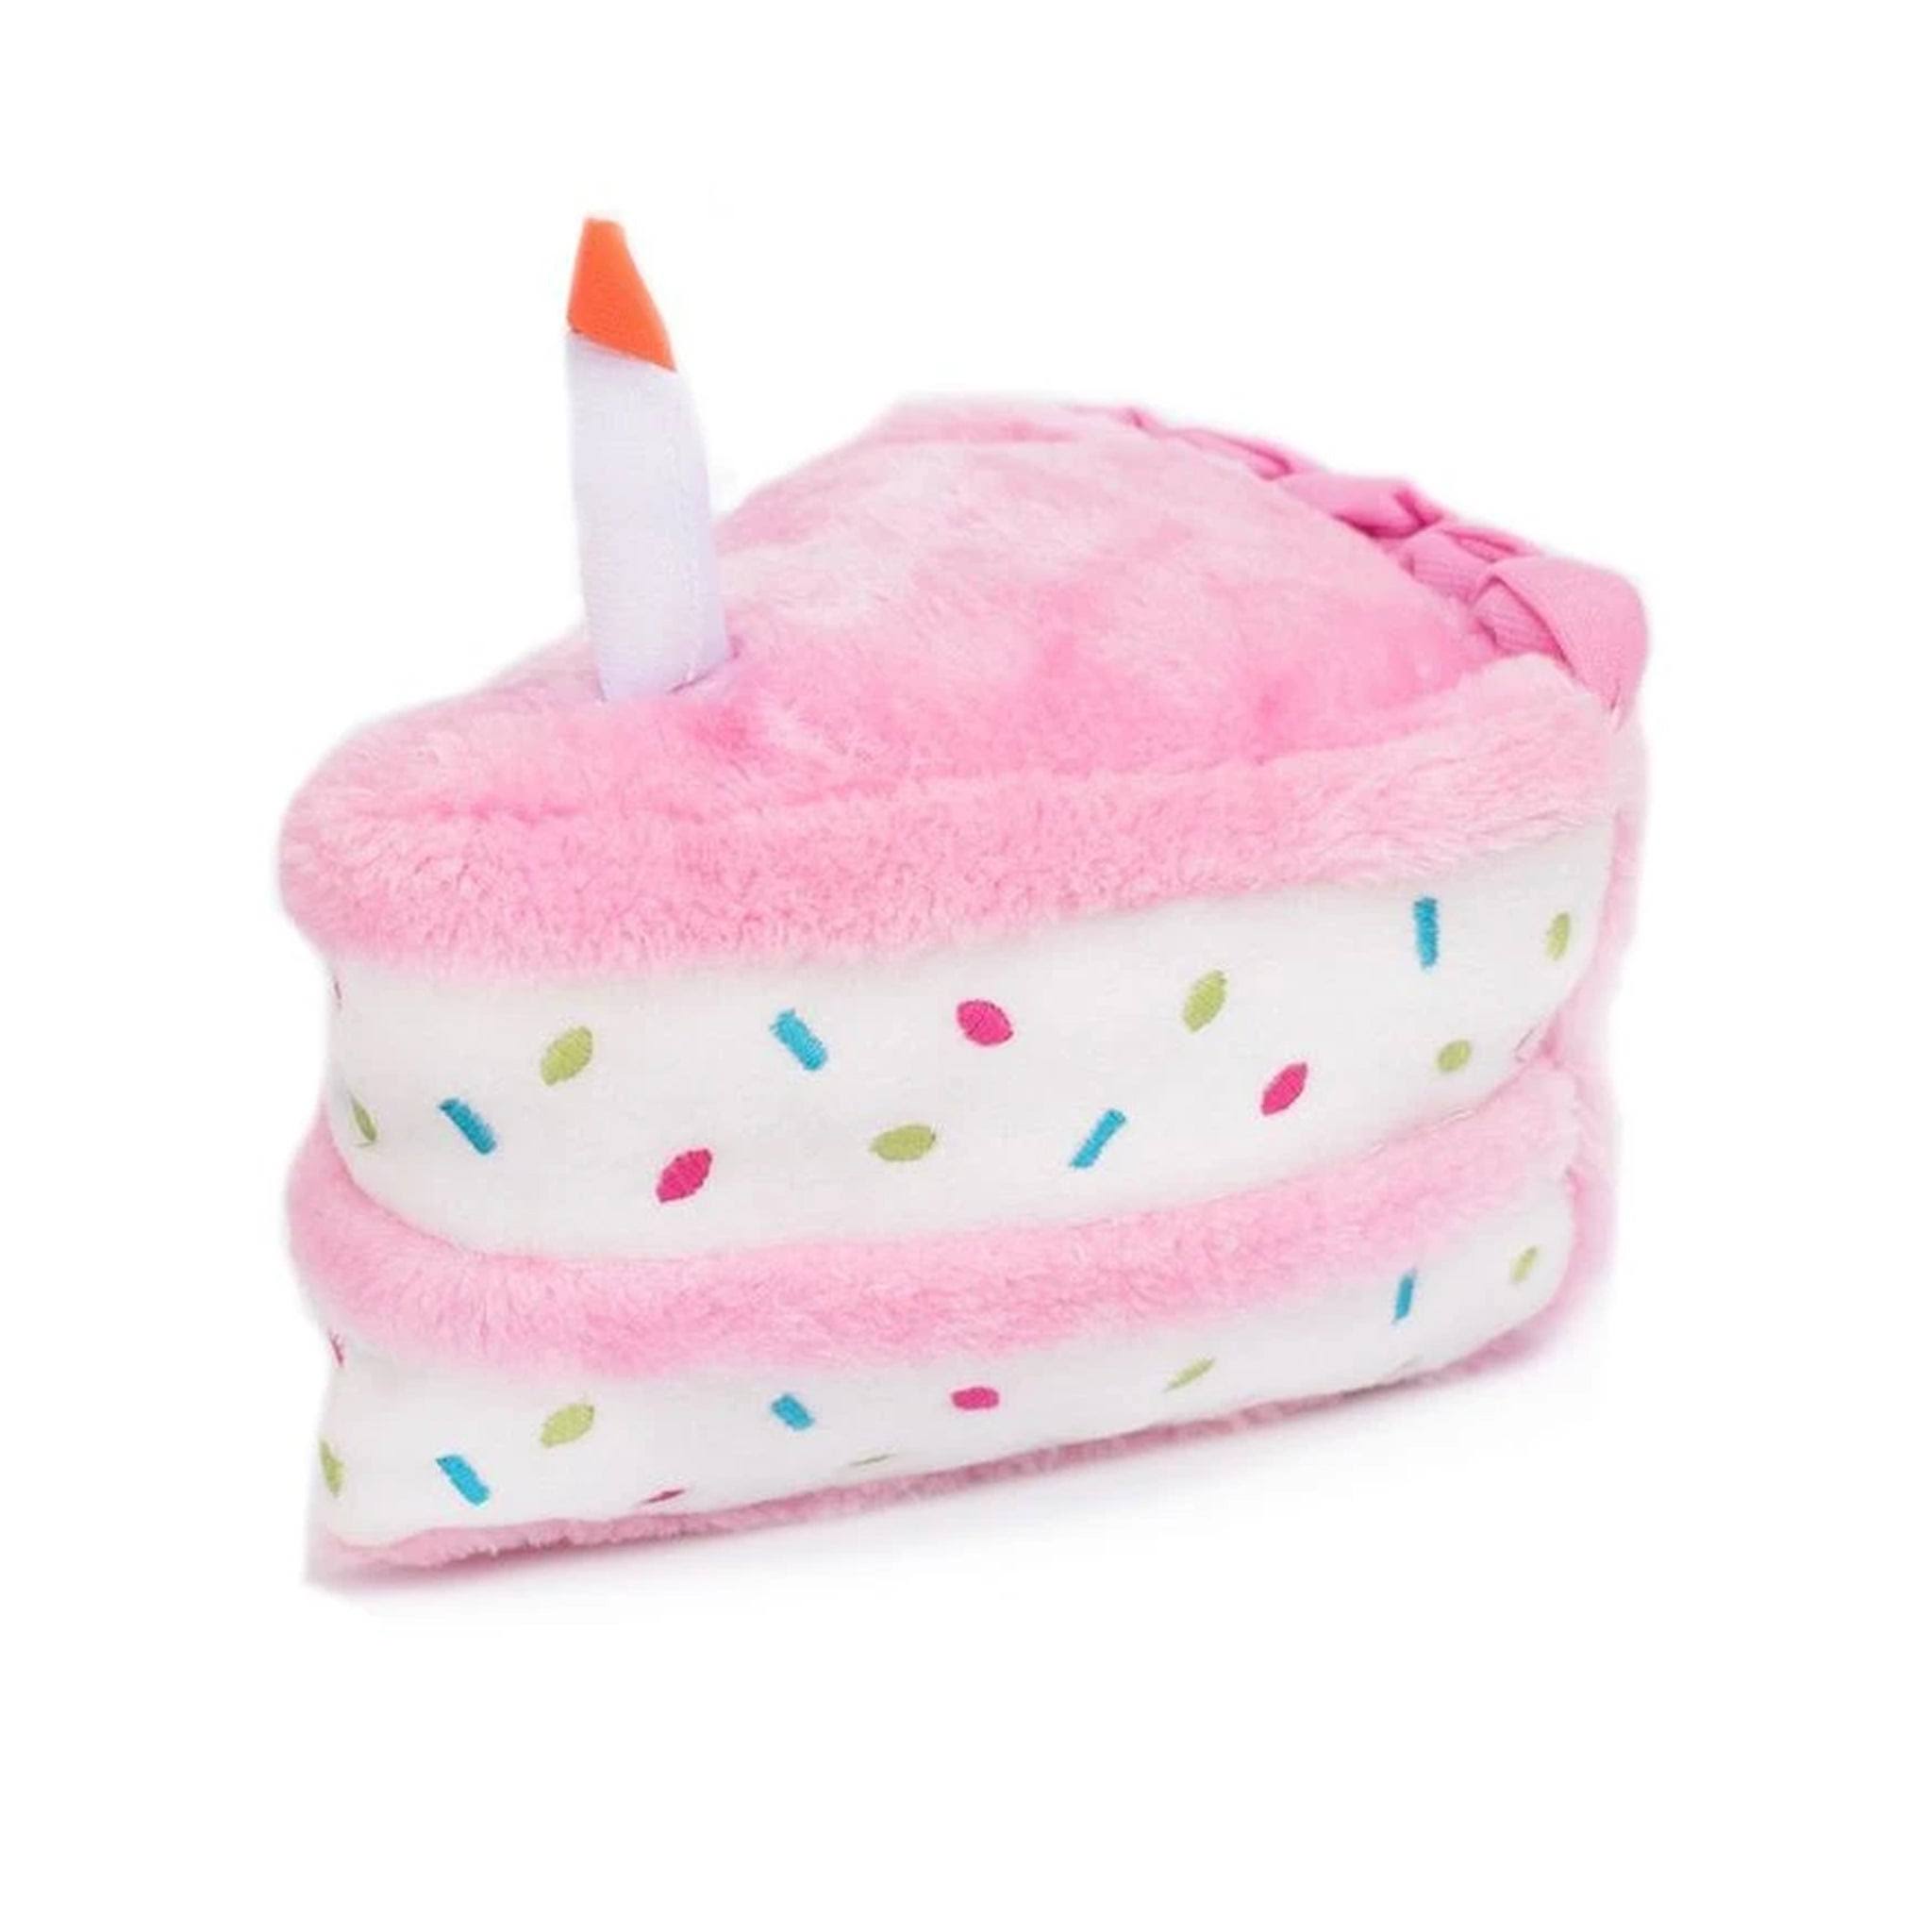 ZippyPaws - Birthday Cake, Pink Dog Toy